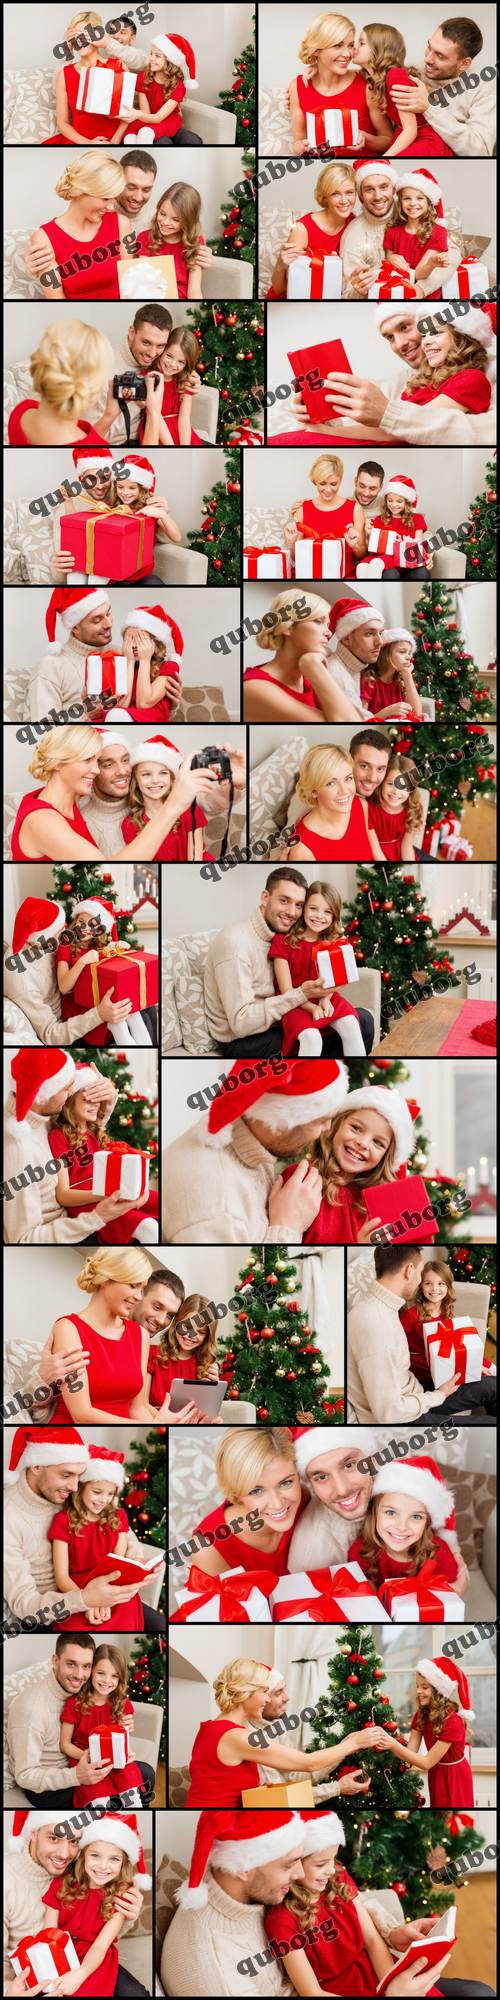 Stock Photos - Christmas Collection 7 - Family